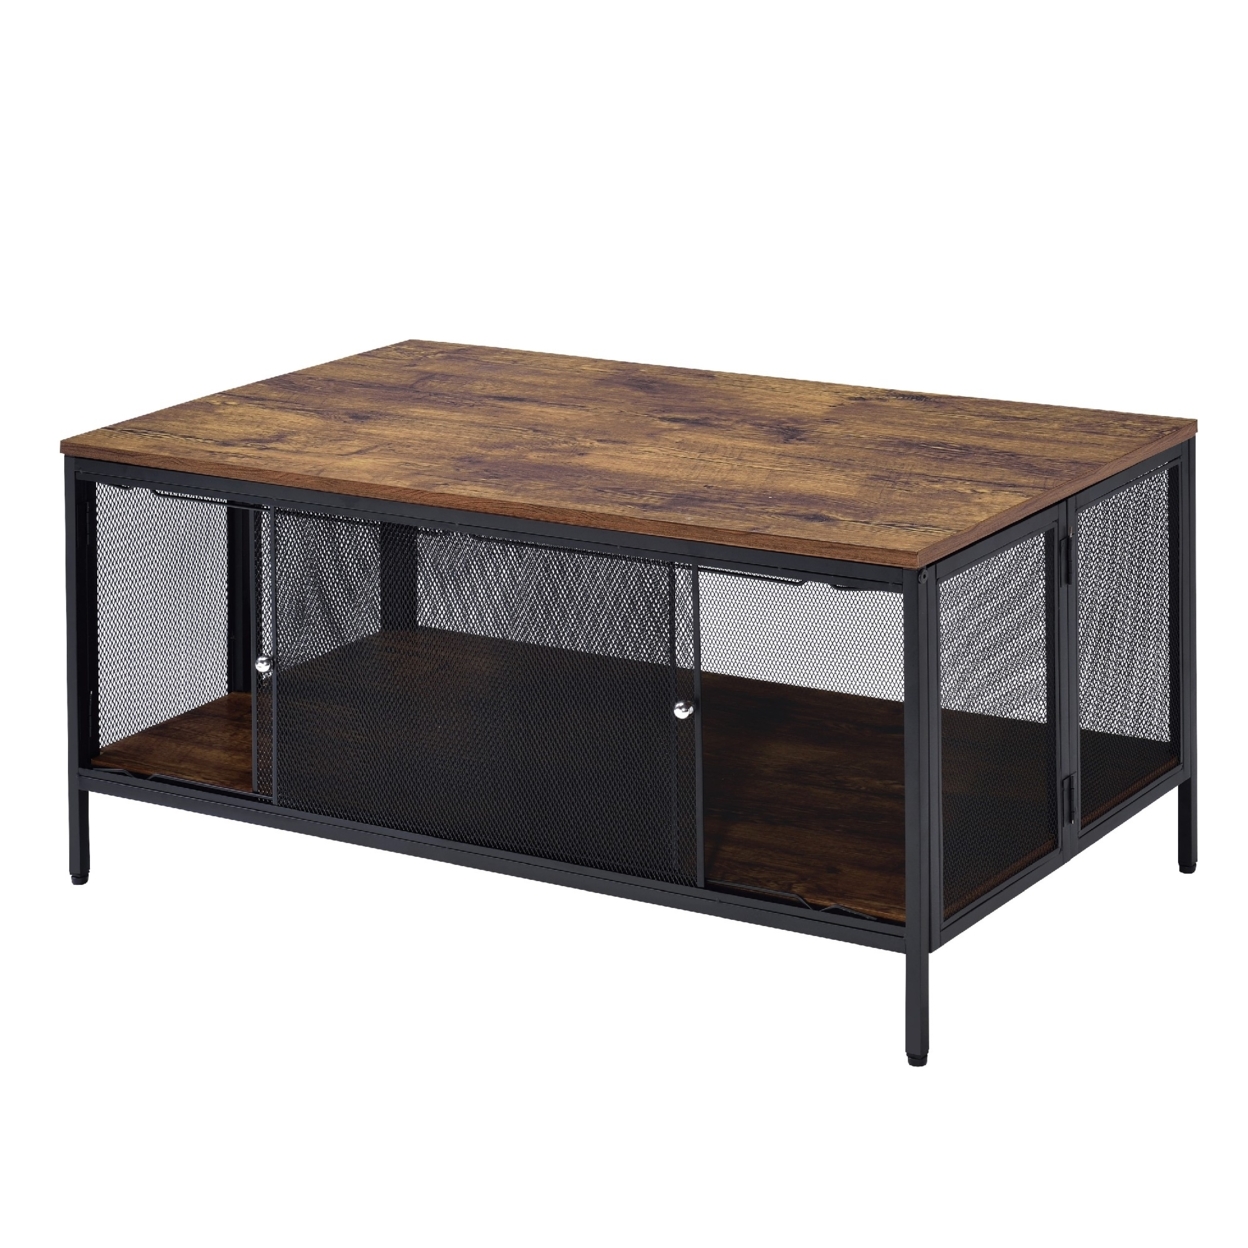 Metal Coffee Table With 1 Bottom Shelf And Mesh Design, Brown And Gray- Saltoro Sherpi